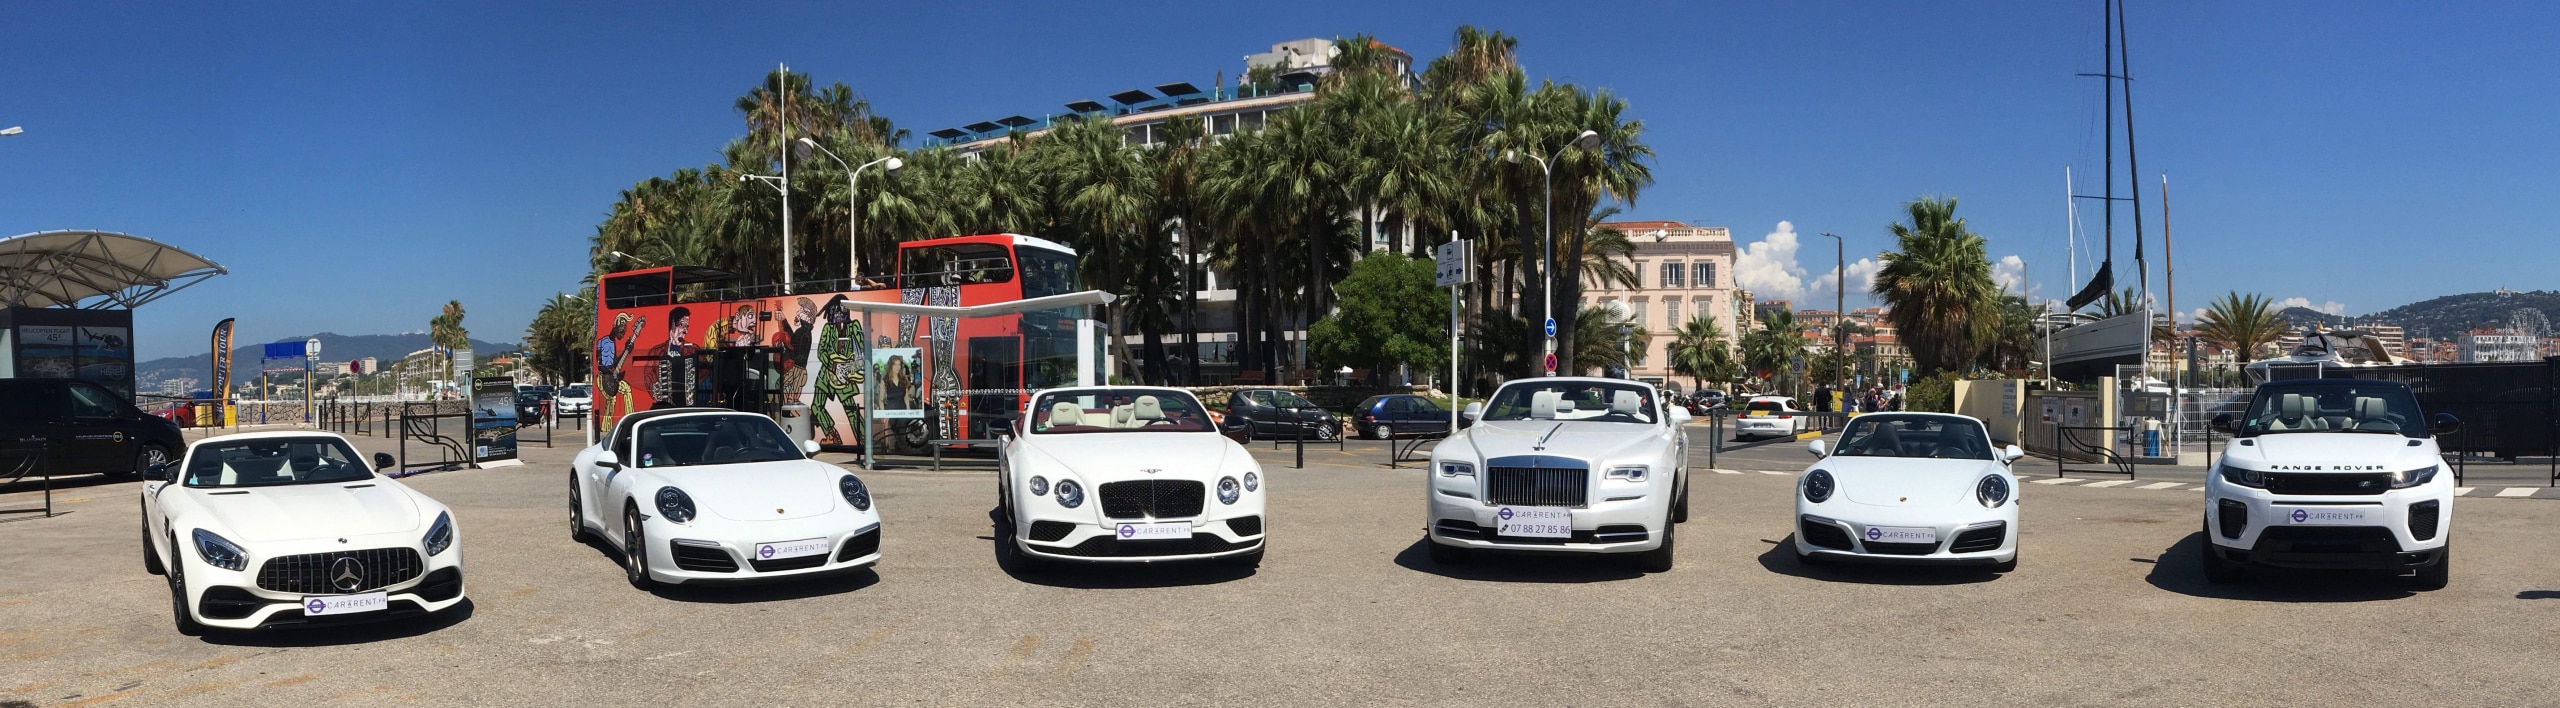 supercar location, location de voiture de luxe à sainte-maxime, Location de voiture de sport sur la Côte d'azur, White-collection-Car4rent-Cannes